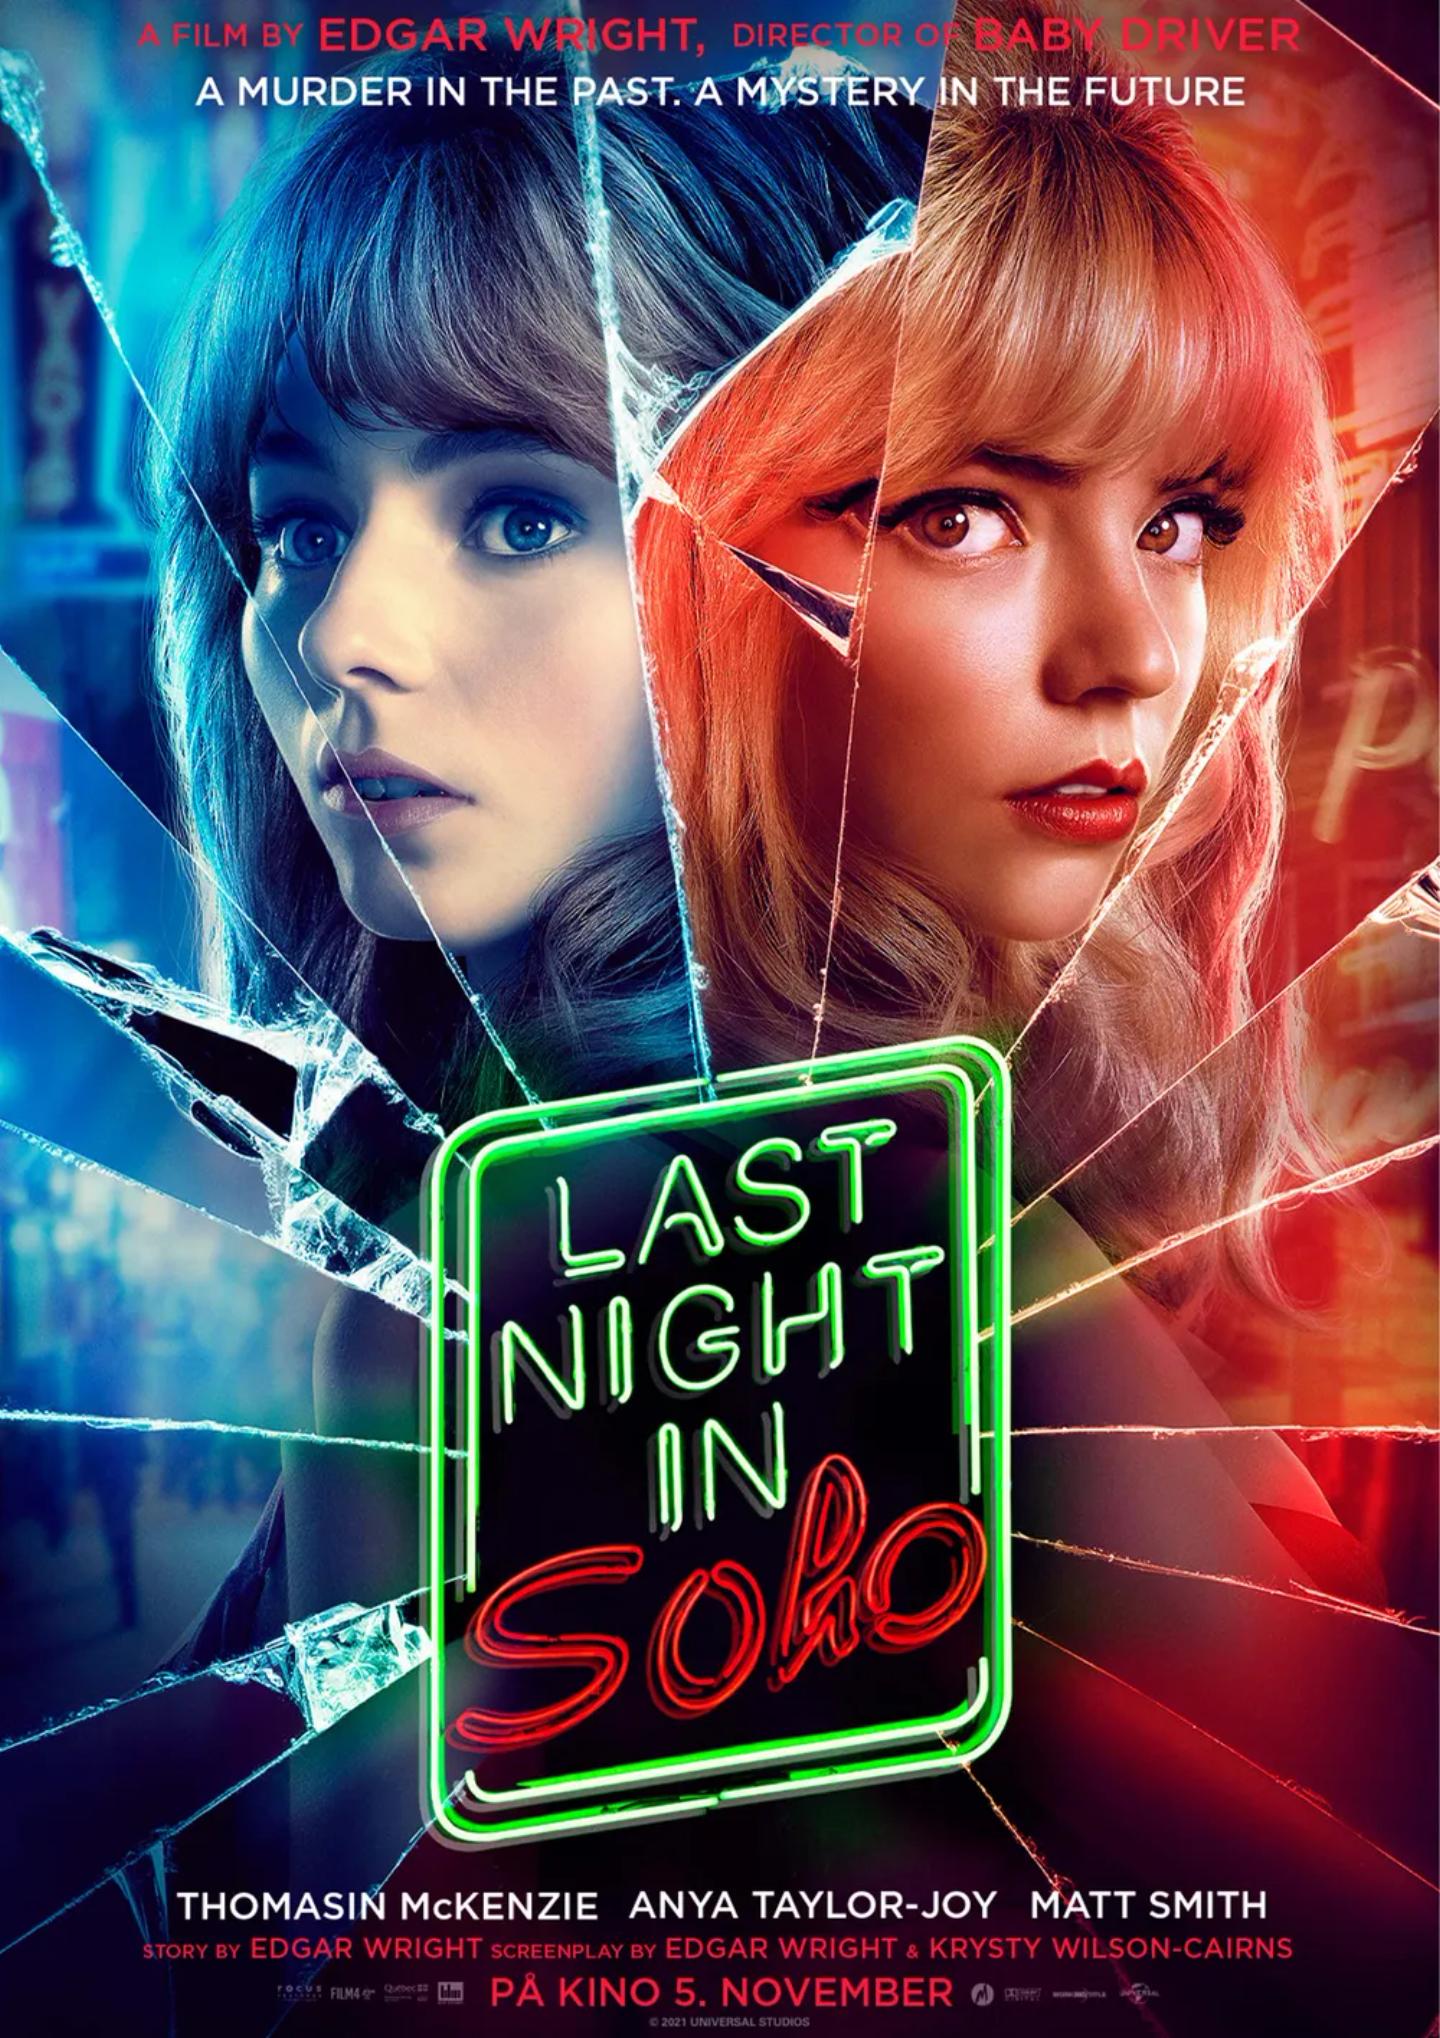 Plakat for 'Last Night in Soho'